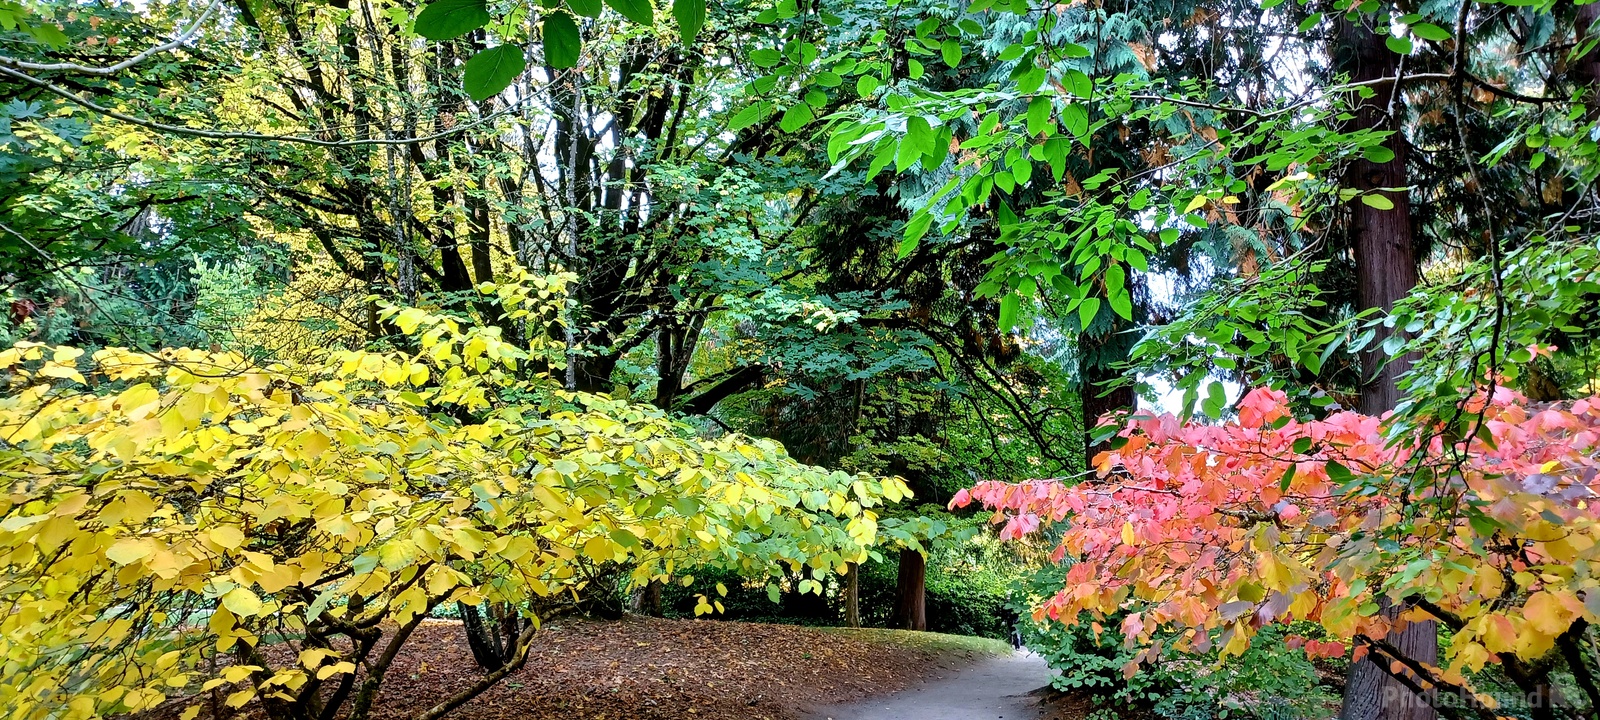 Image of Washington Park Arboretum by Eugene Vig